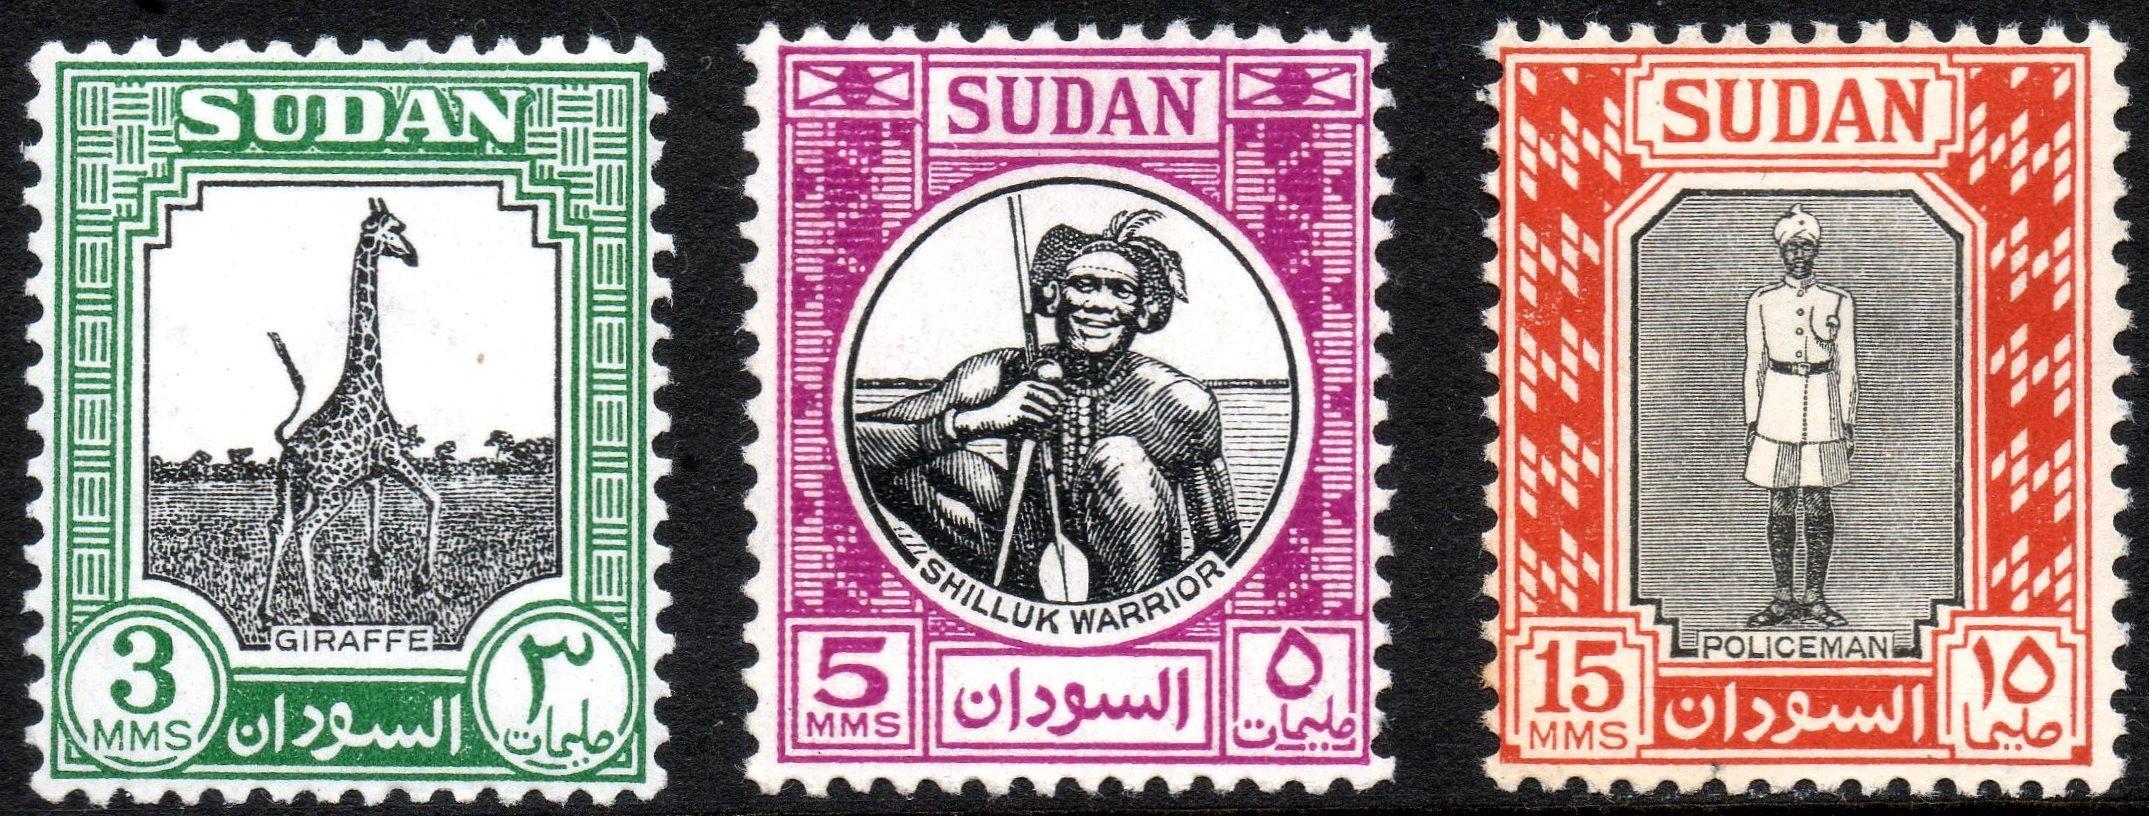 4 السودان - طوابع البريد